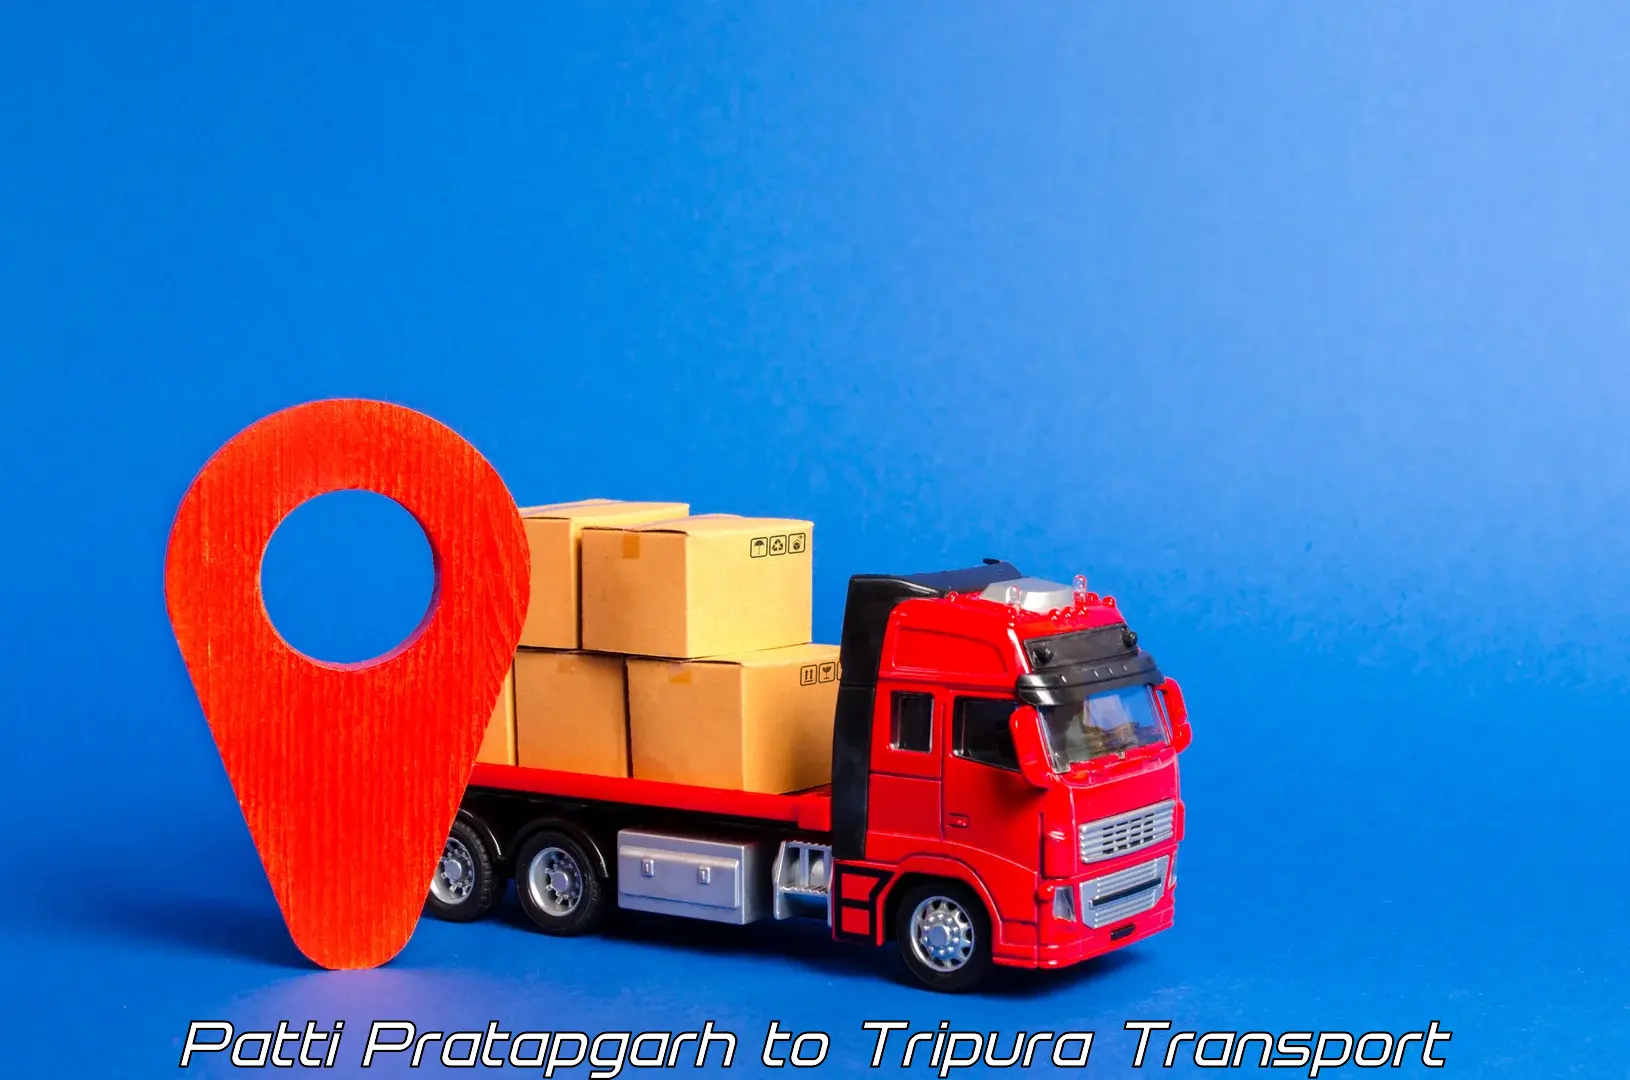 Truck transport companies in India in Patti Pratapgarh to Manughat